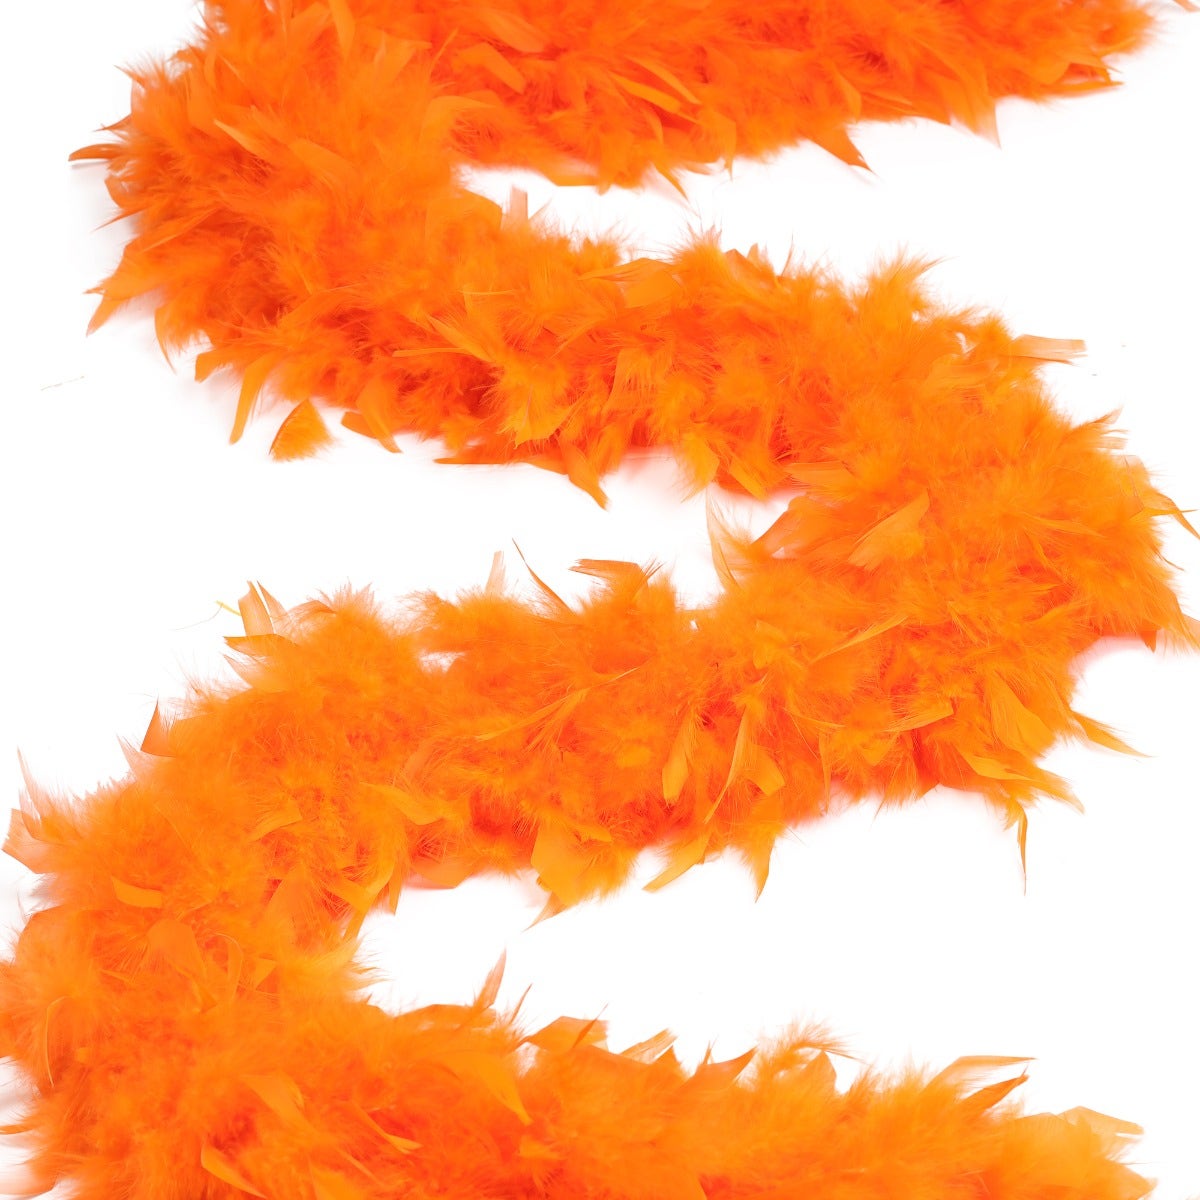 Cheap Orange Feather Boa